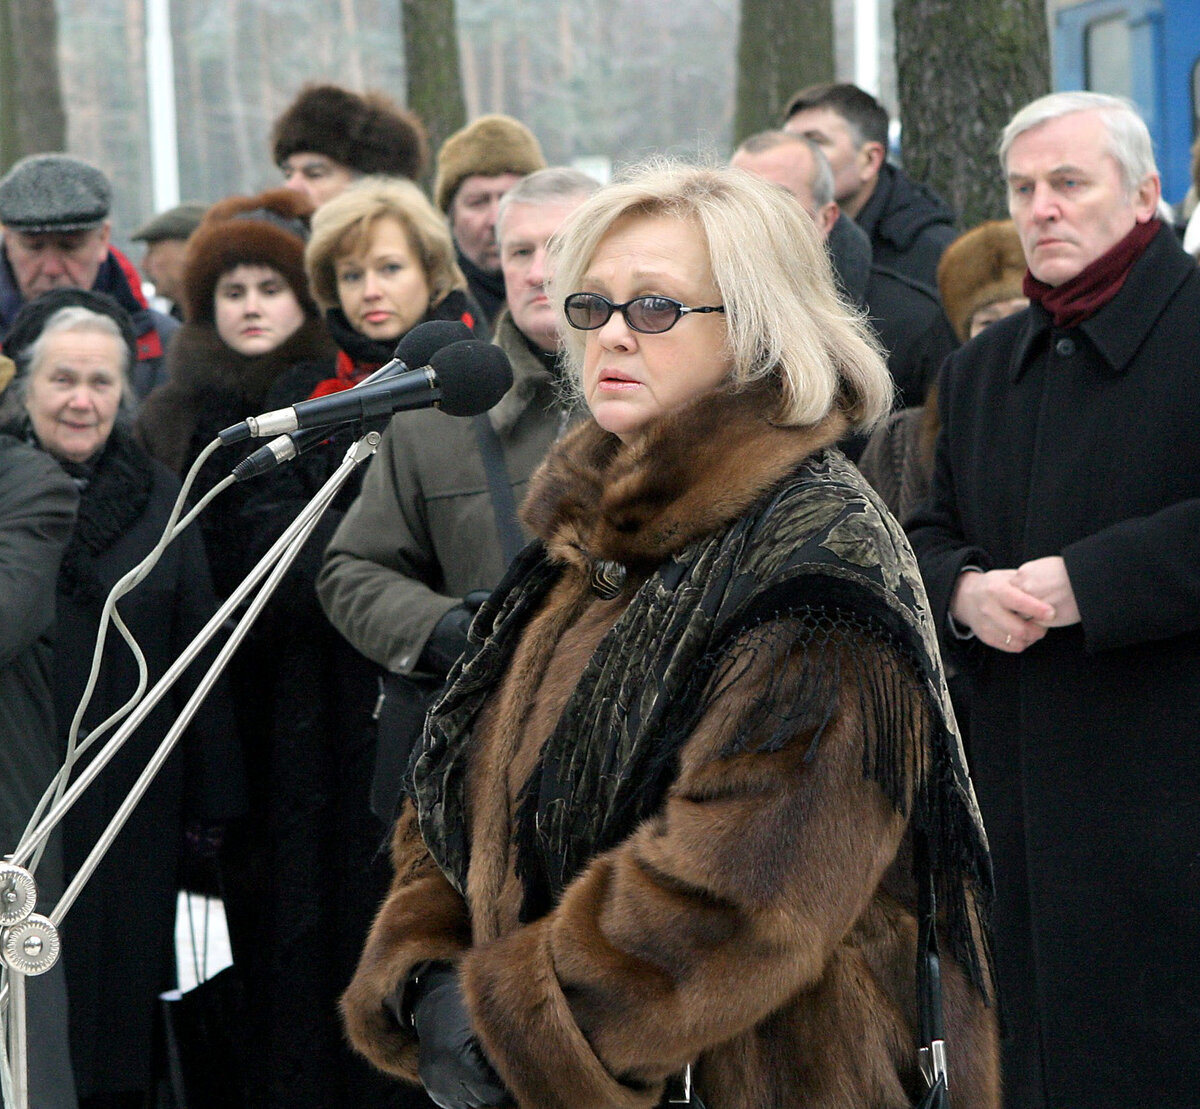  Вдова основателя группы "Песняры" Владимира Мулявина Светлана Пенкина во время церемонии открытия памятника на Восточном кладбище в Минске.